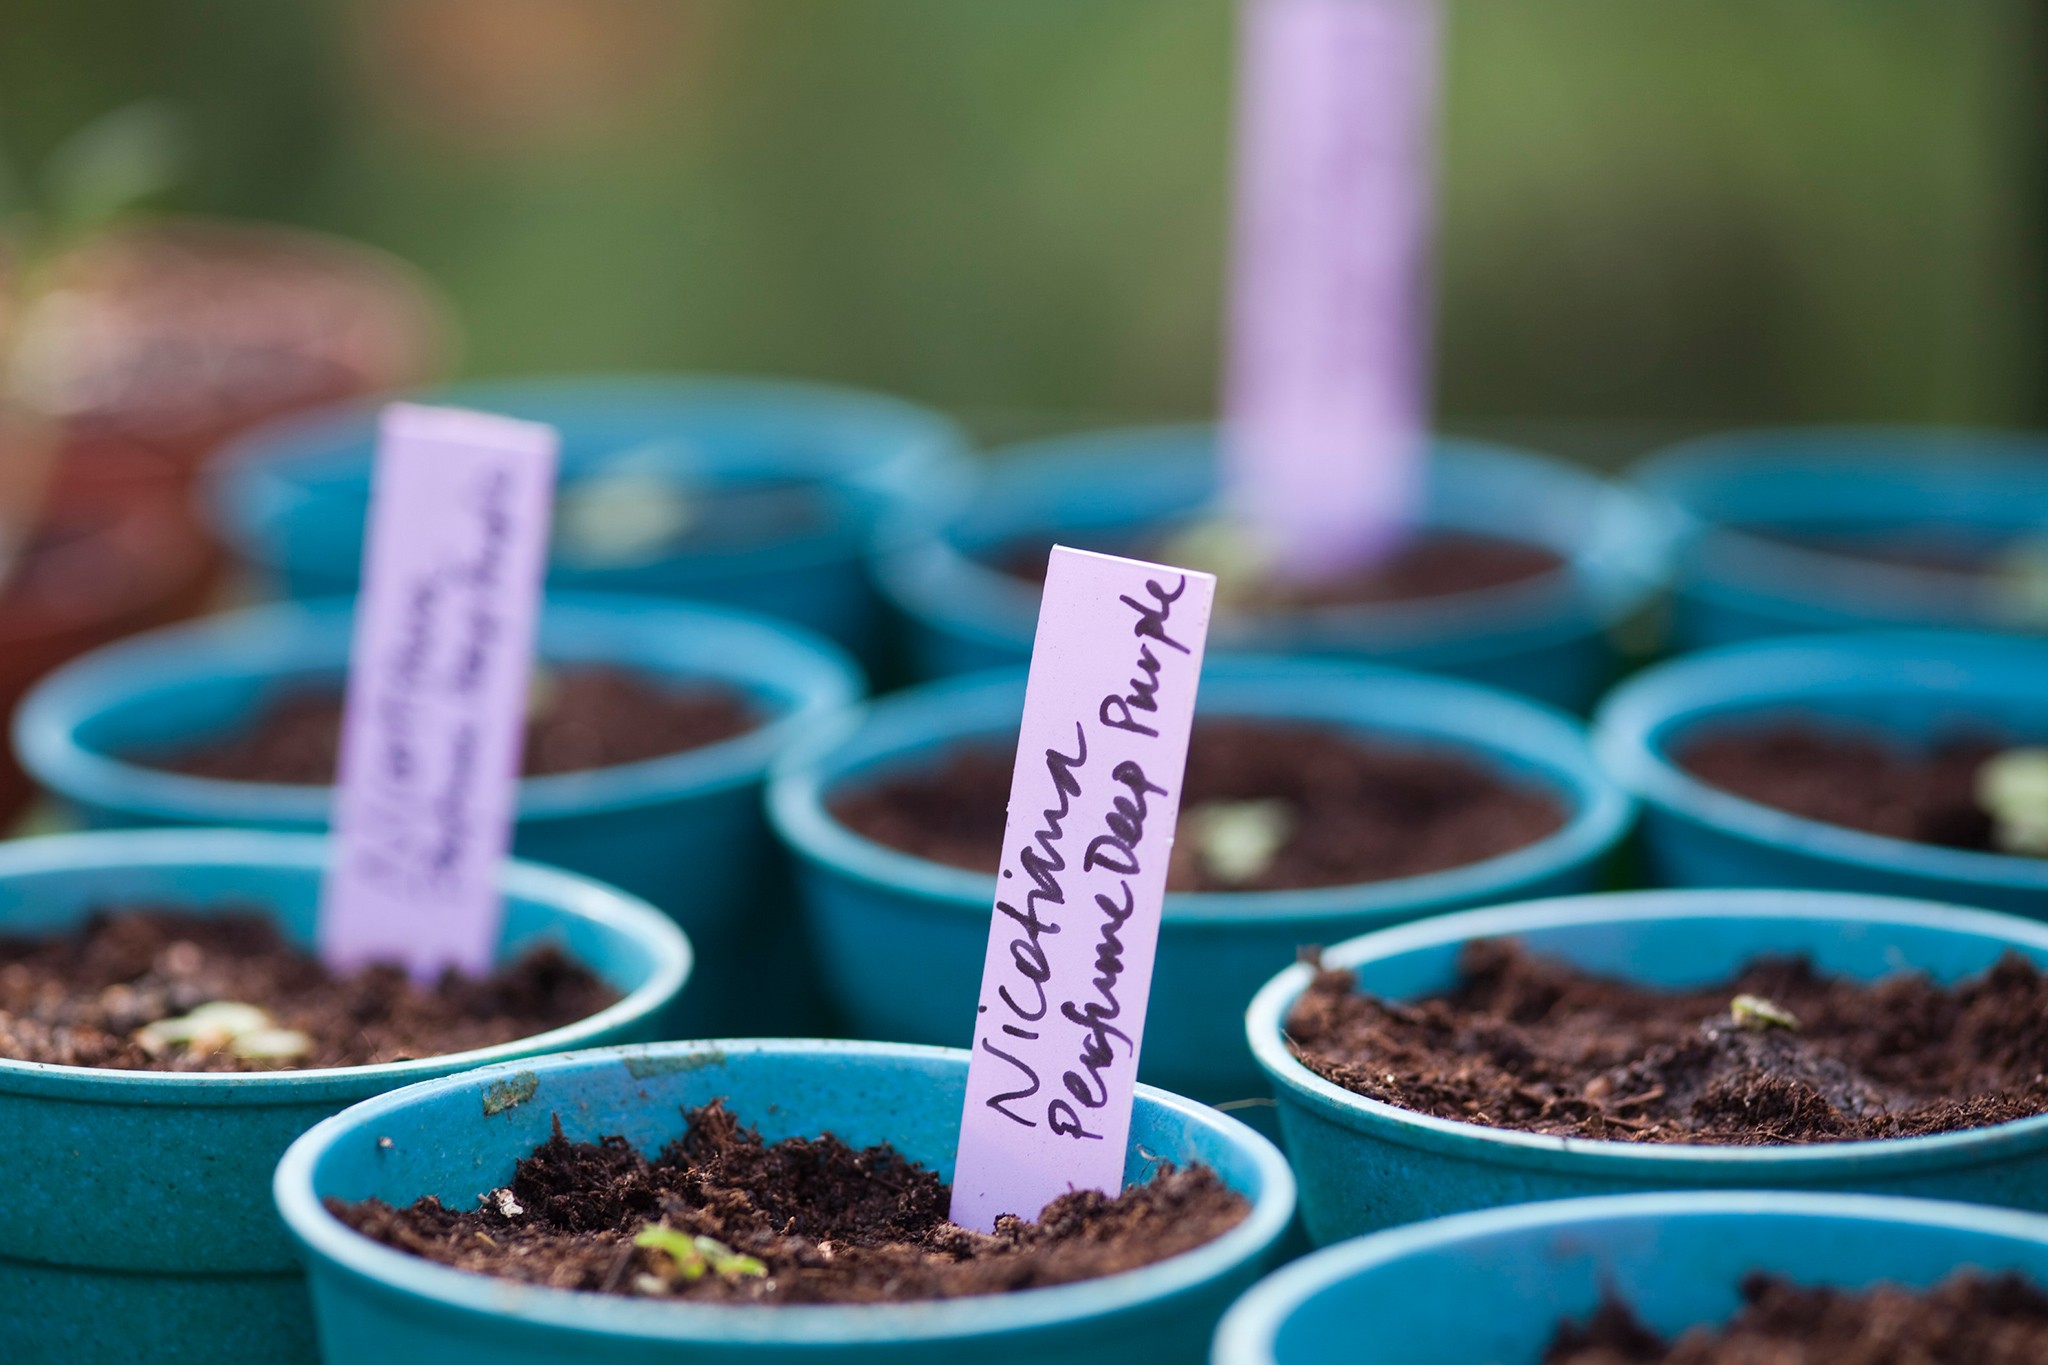 Nicotiana seedlings